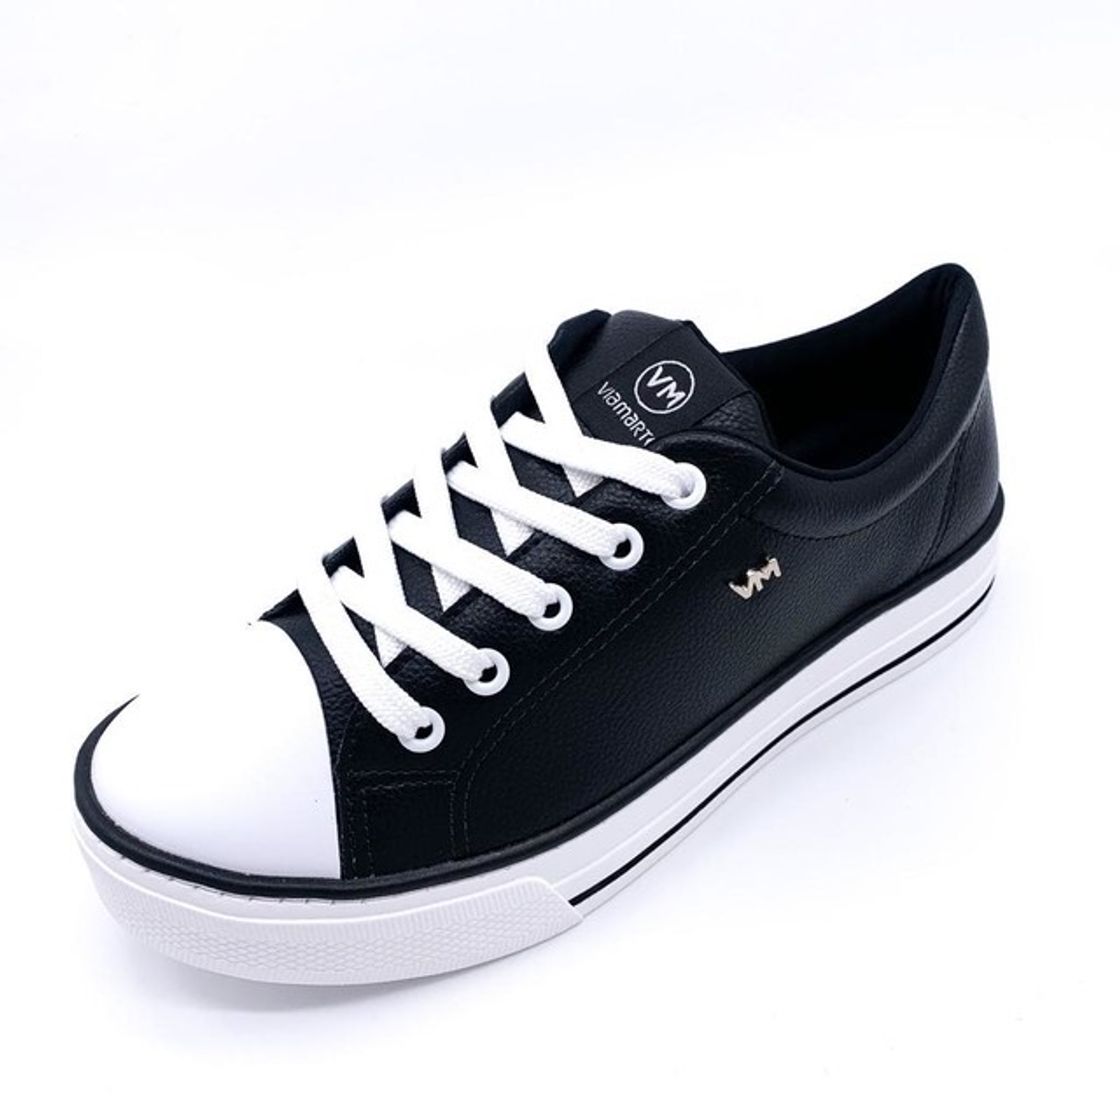 Compre online produtos de Loja de Sapatos Online DoMeuJeito ...